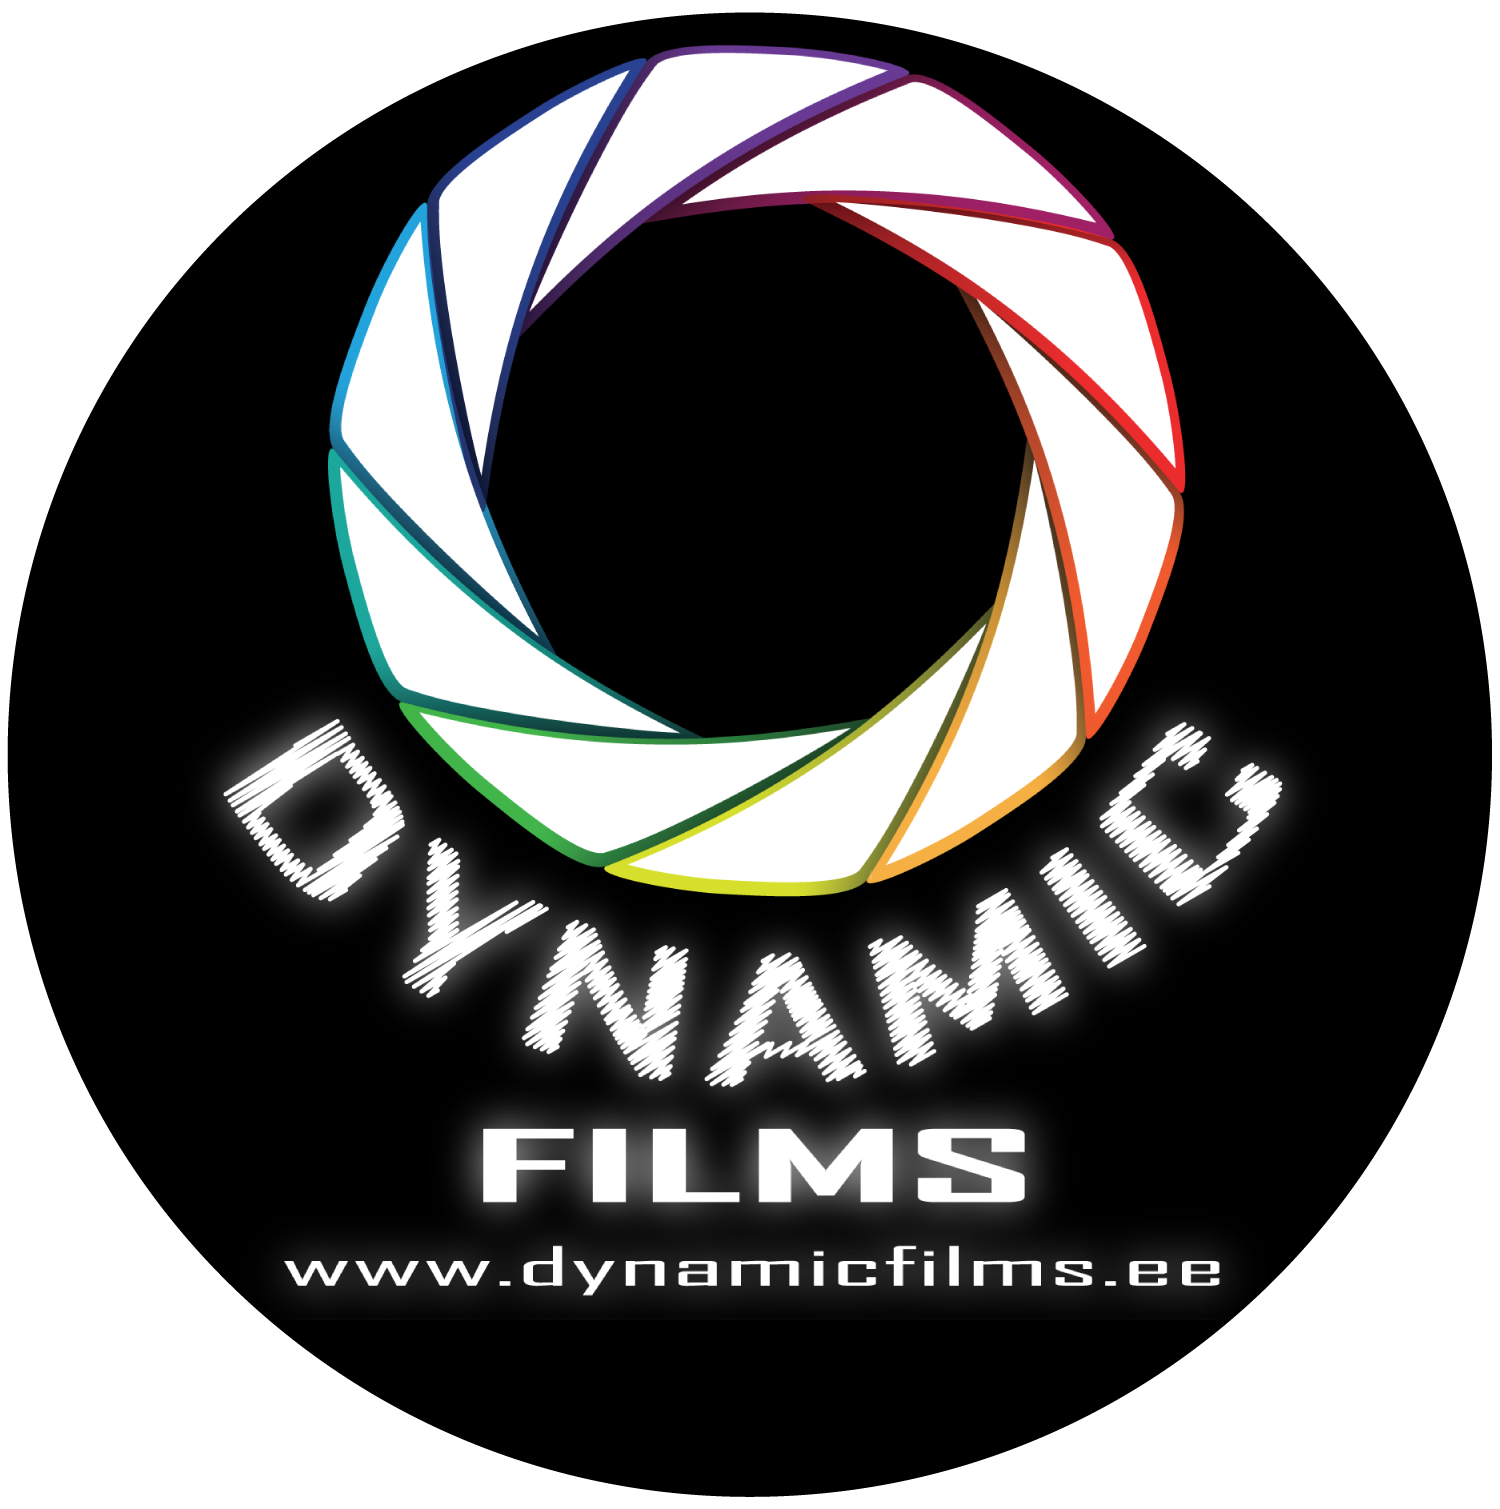 DynamicFilms.ee